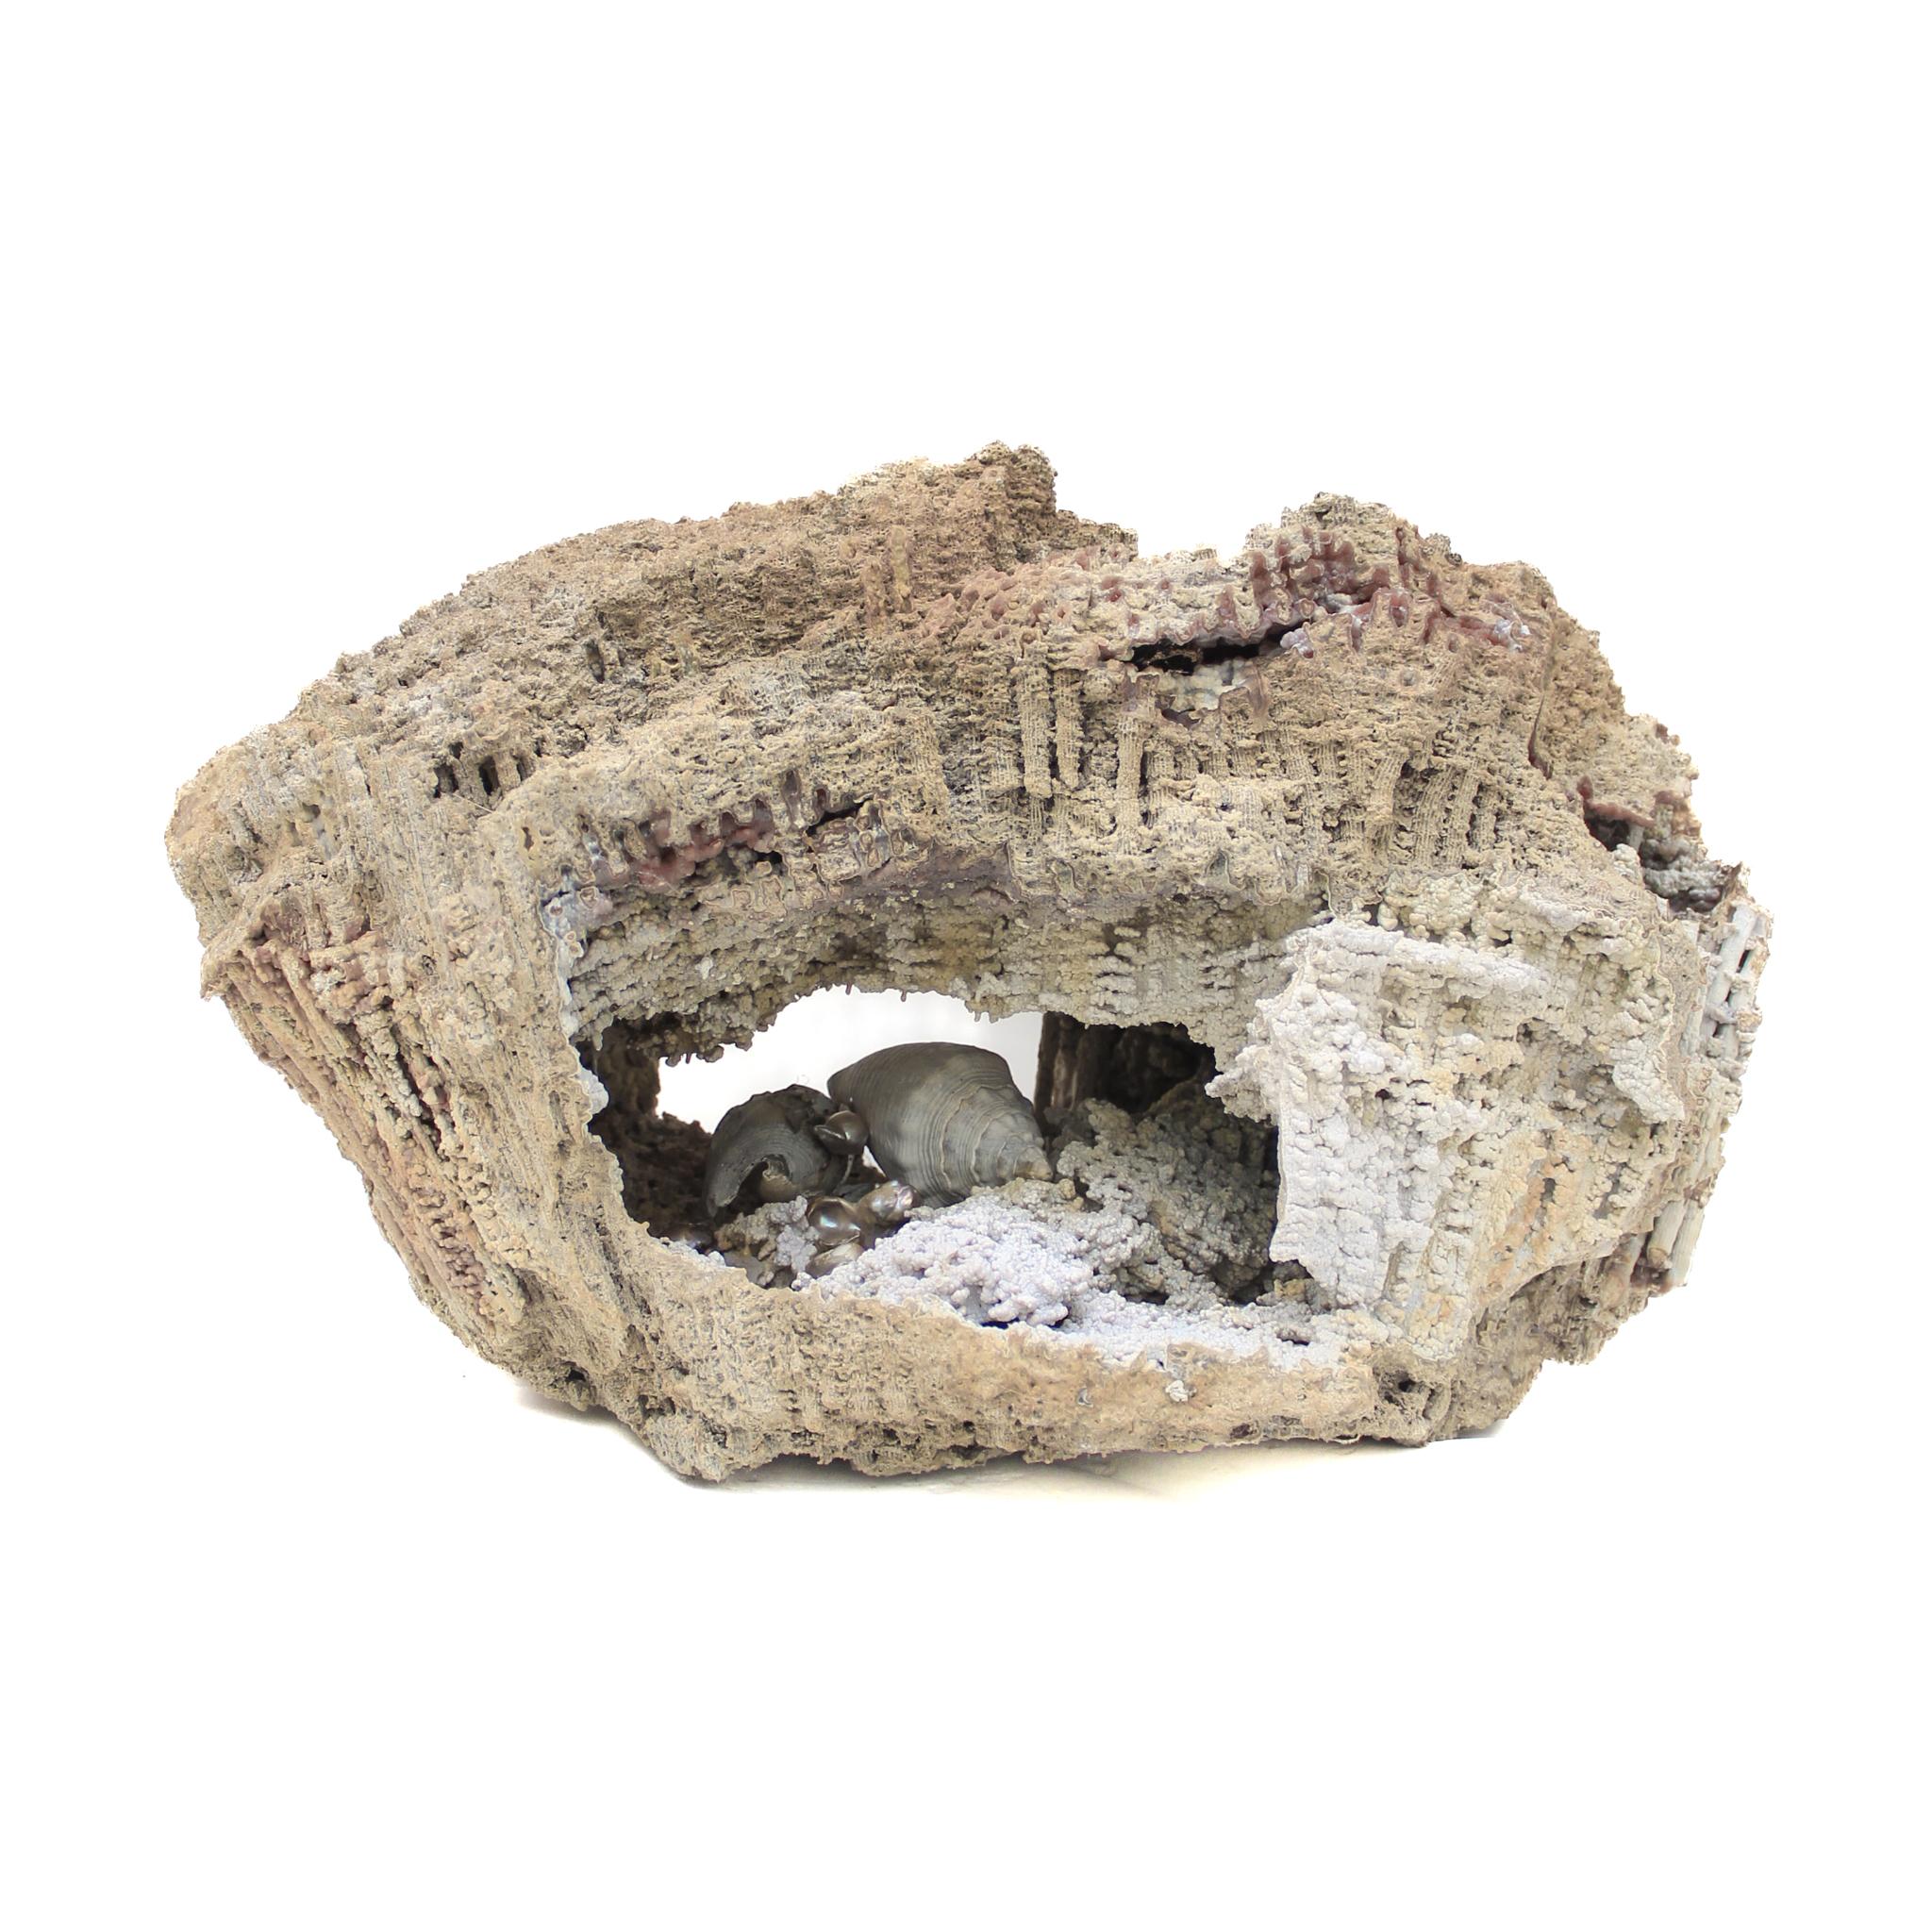 « Cauliflower », corail fossile d'agate orné de perles et de coquillages baroques de forme naturelle.

Le corail fossile d'agate est la pierre d'État de Floride et est connu pour sa formation unique qui peut avoir lieu pendant plus de 20 millions